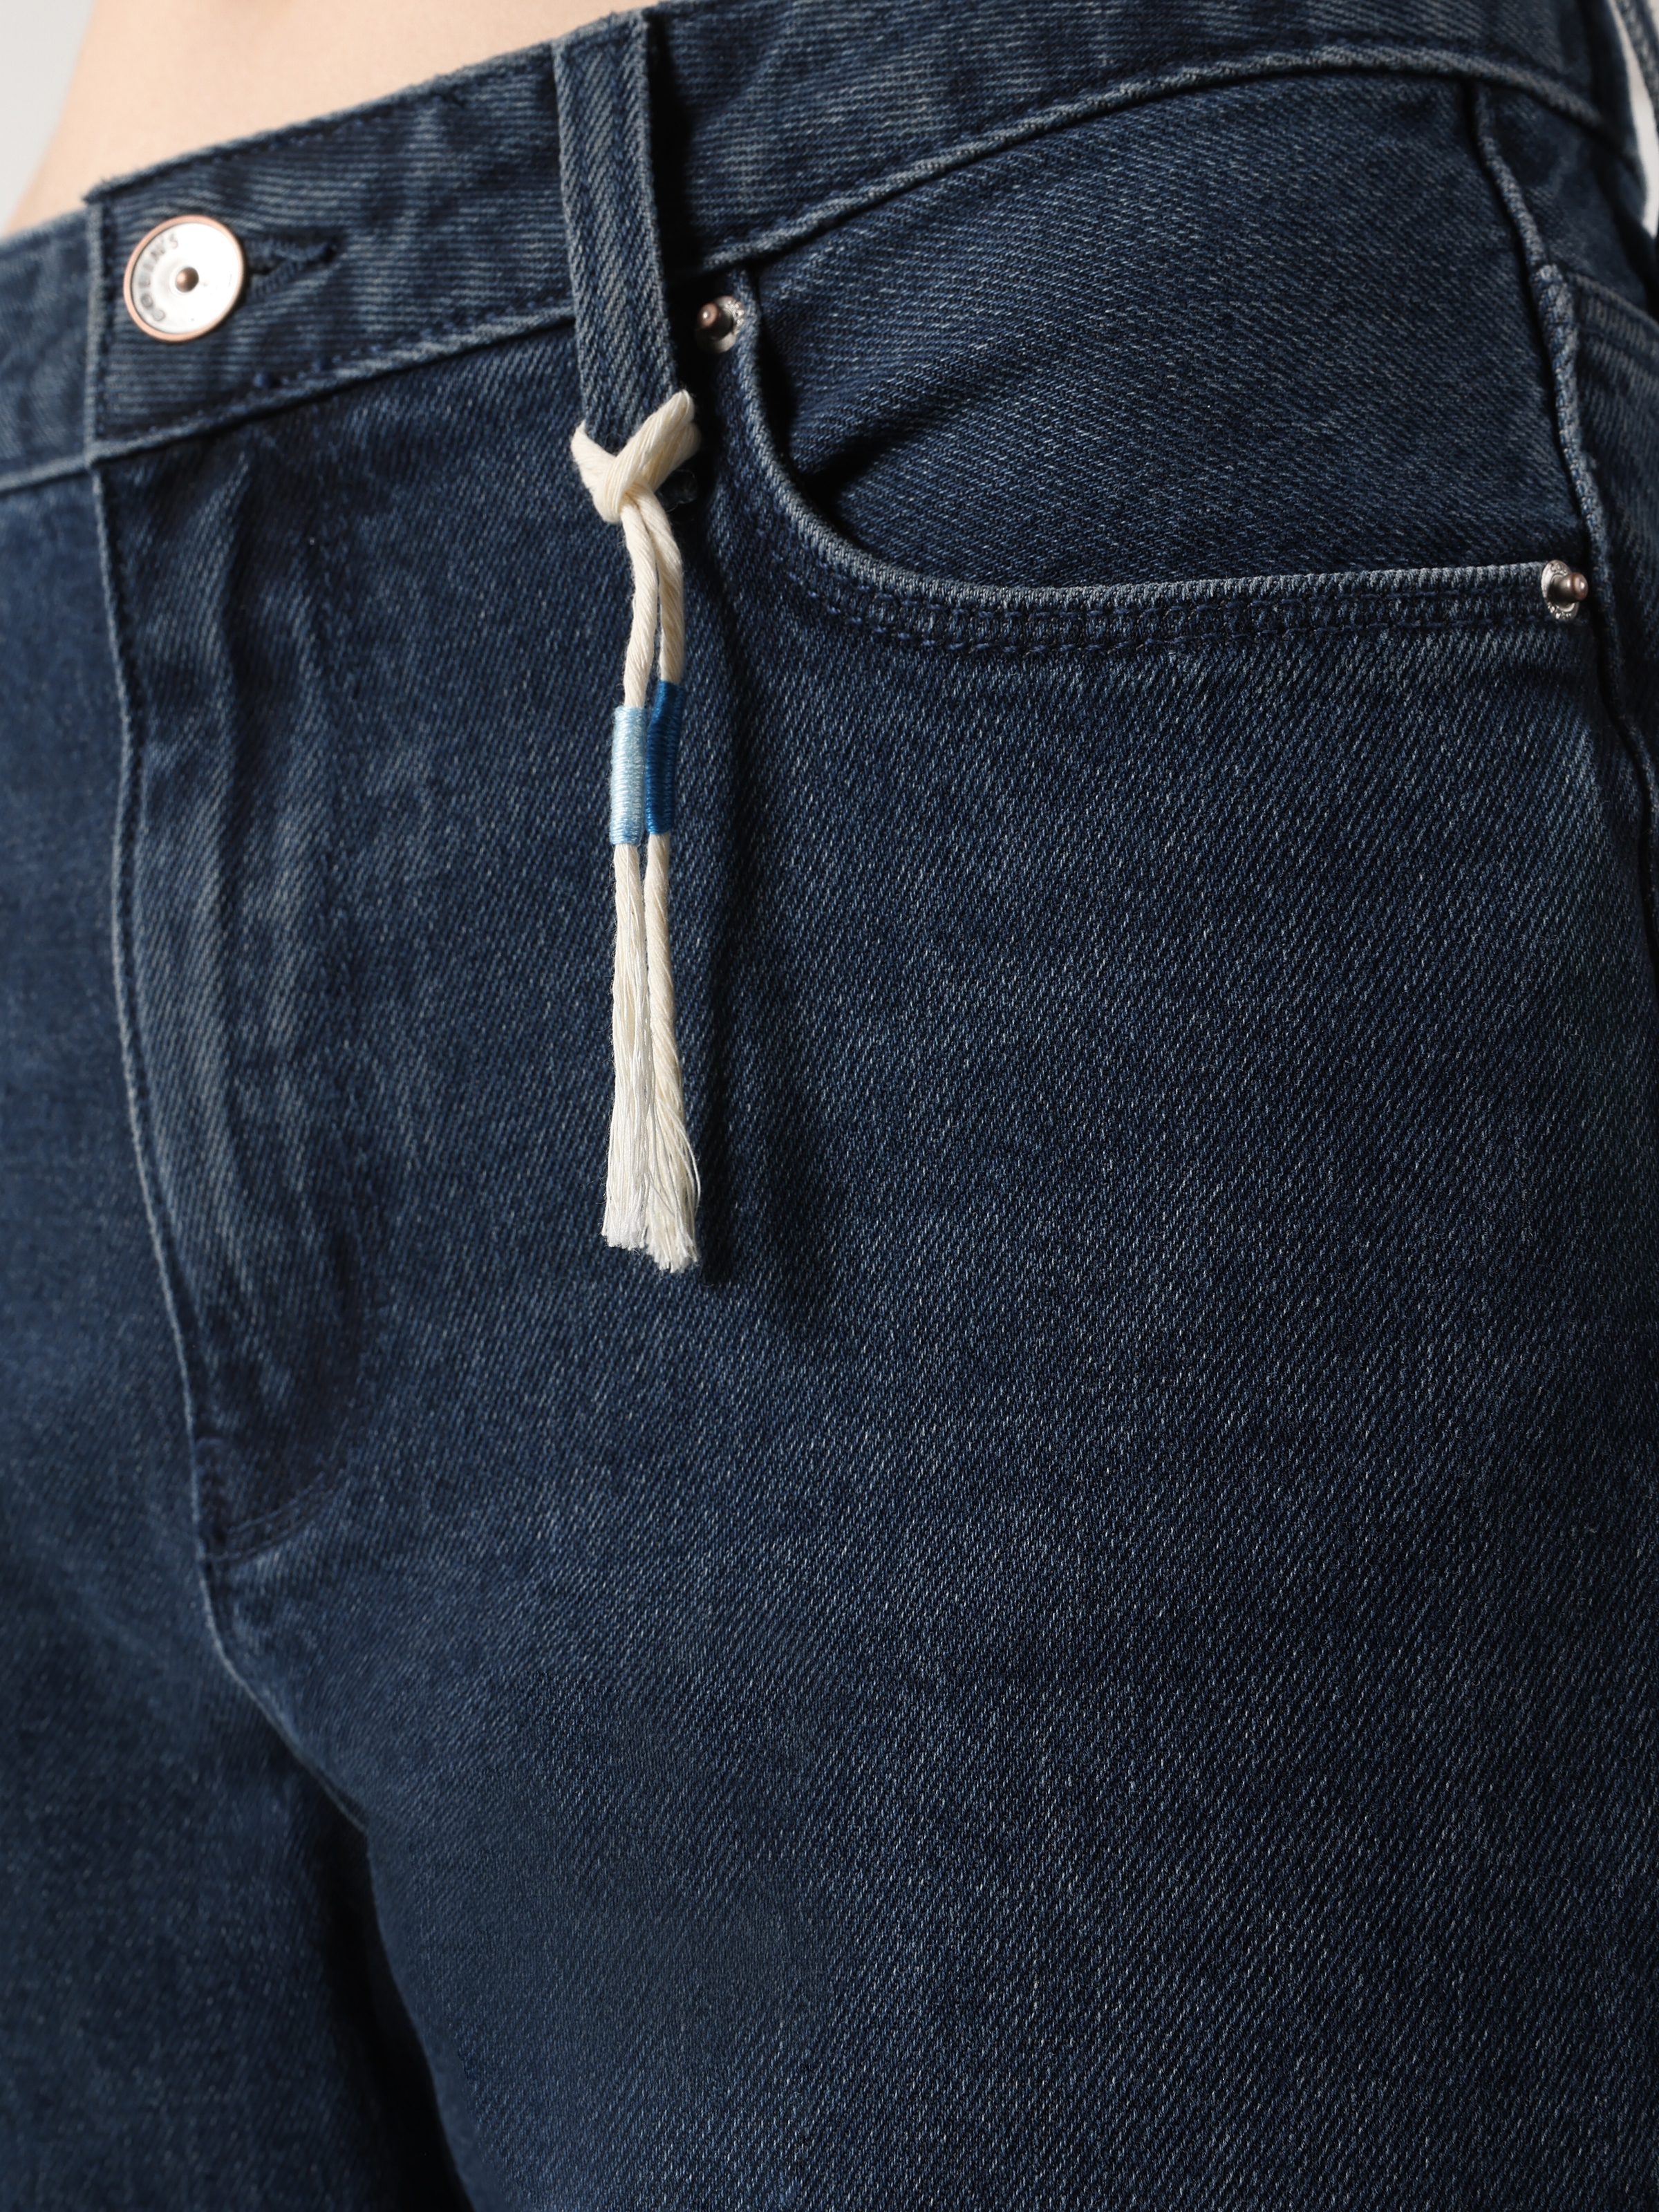 Afișați detalii pentru Pantaloni De Dama Albastru inchis Slim Fit 891 MAYA 